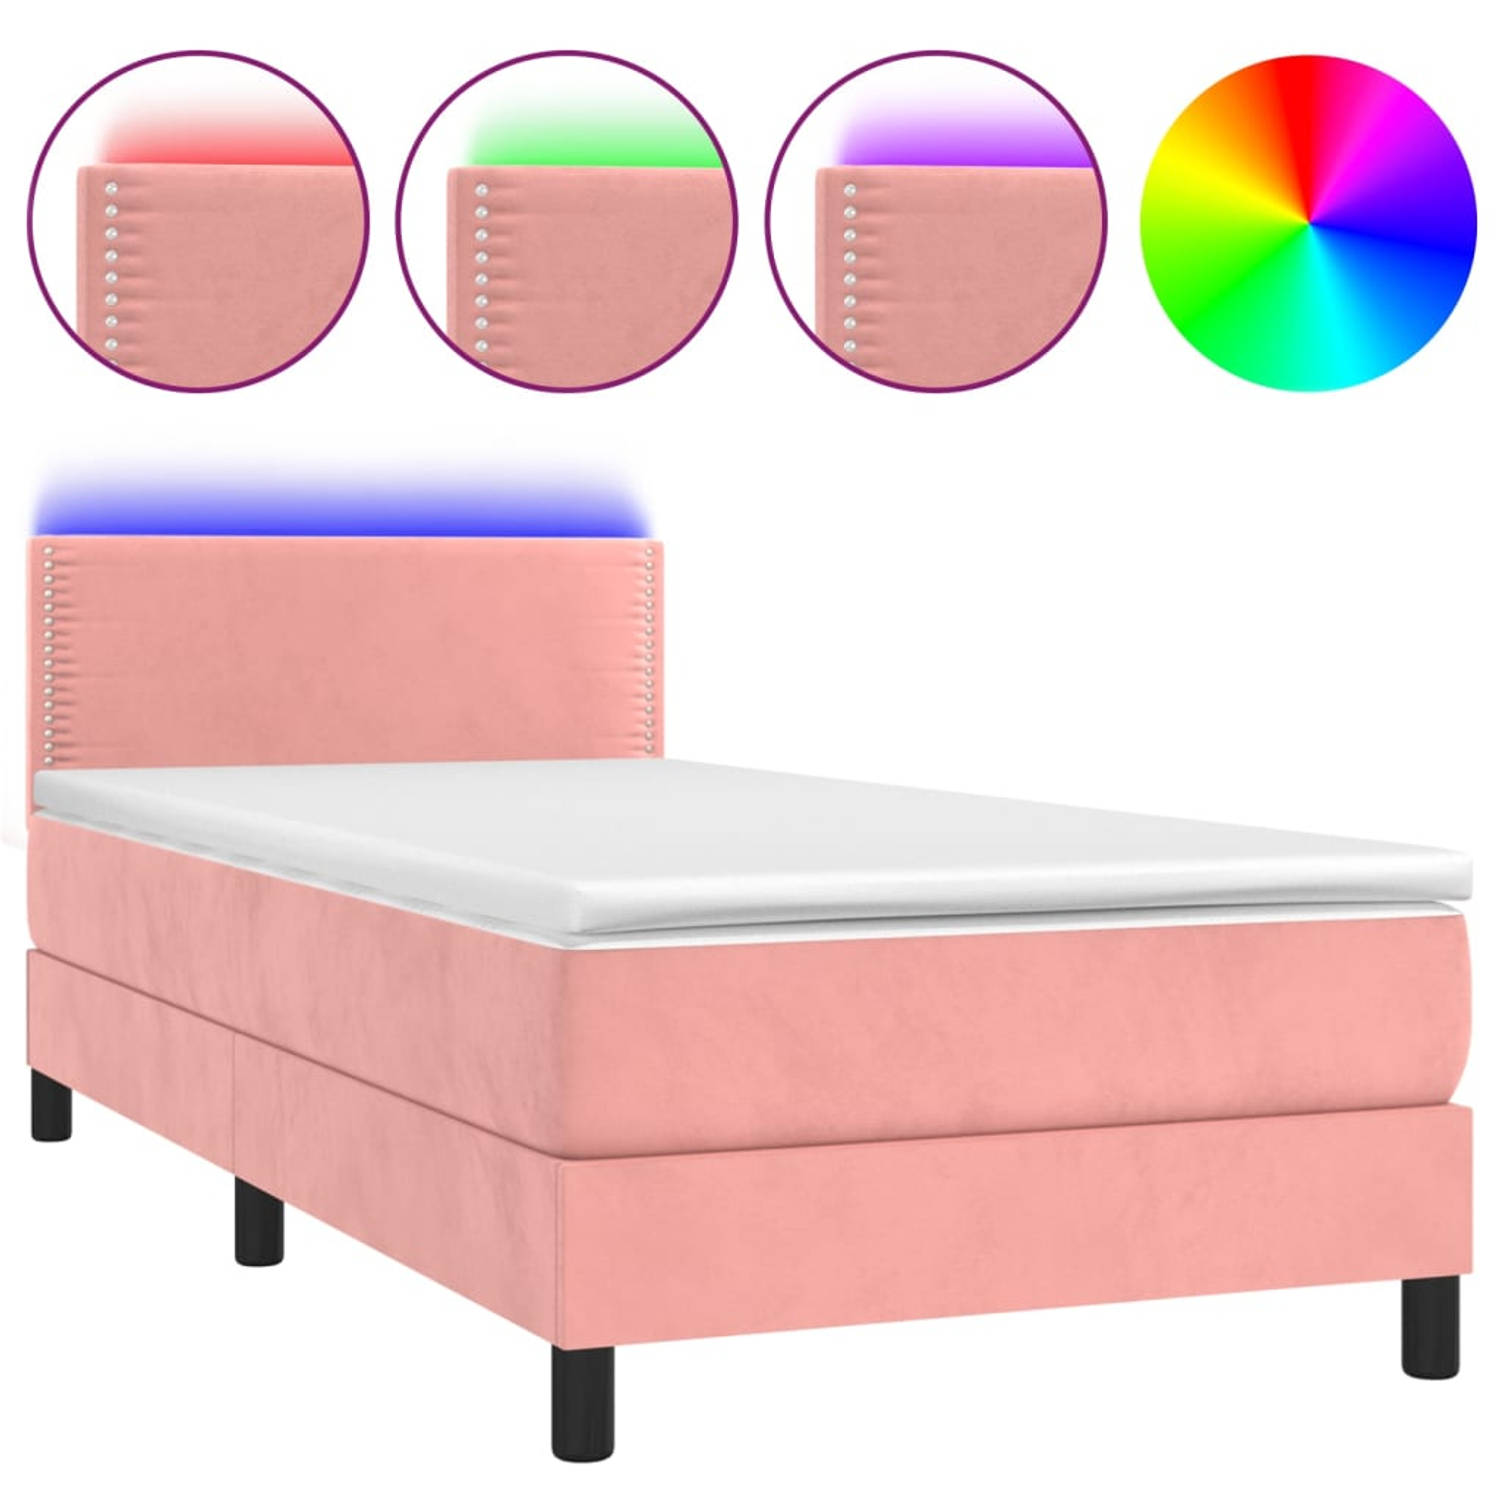 The Living Store Boxspring Bed - Roze fluweel - 203 x 90 x 78/88 cm - Verstelbaar hoofdbord - Pocketvering matras - Huidvriendelijk topmatras - Kleurrijke LED-verlichting